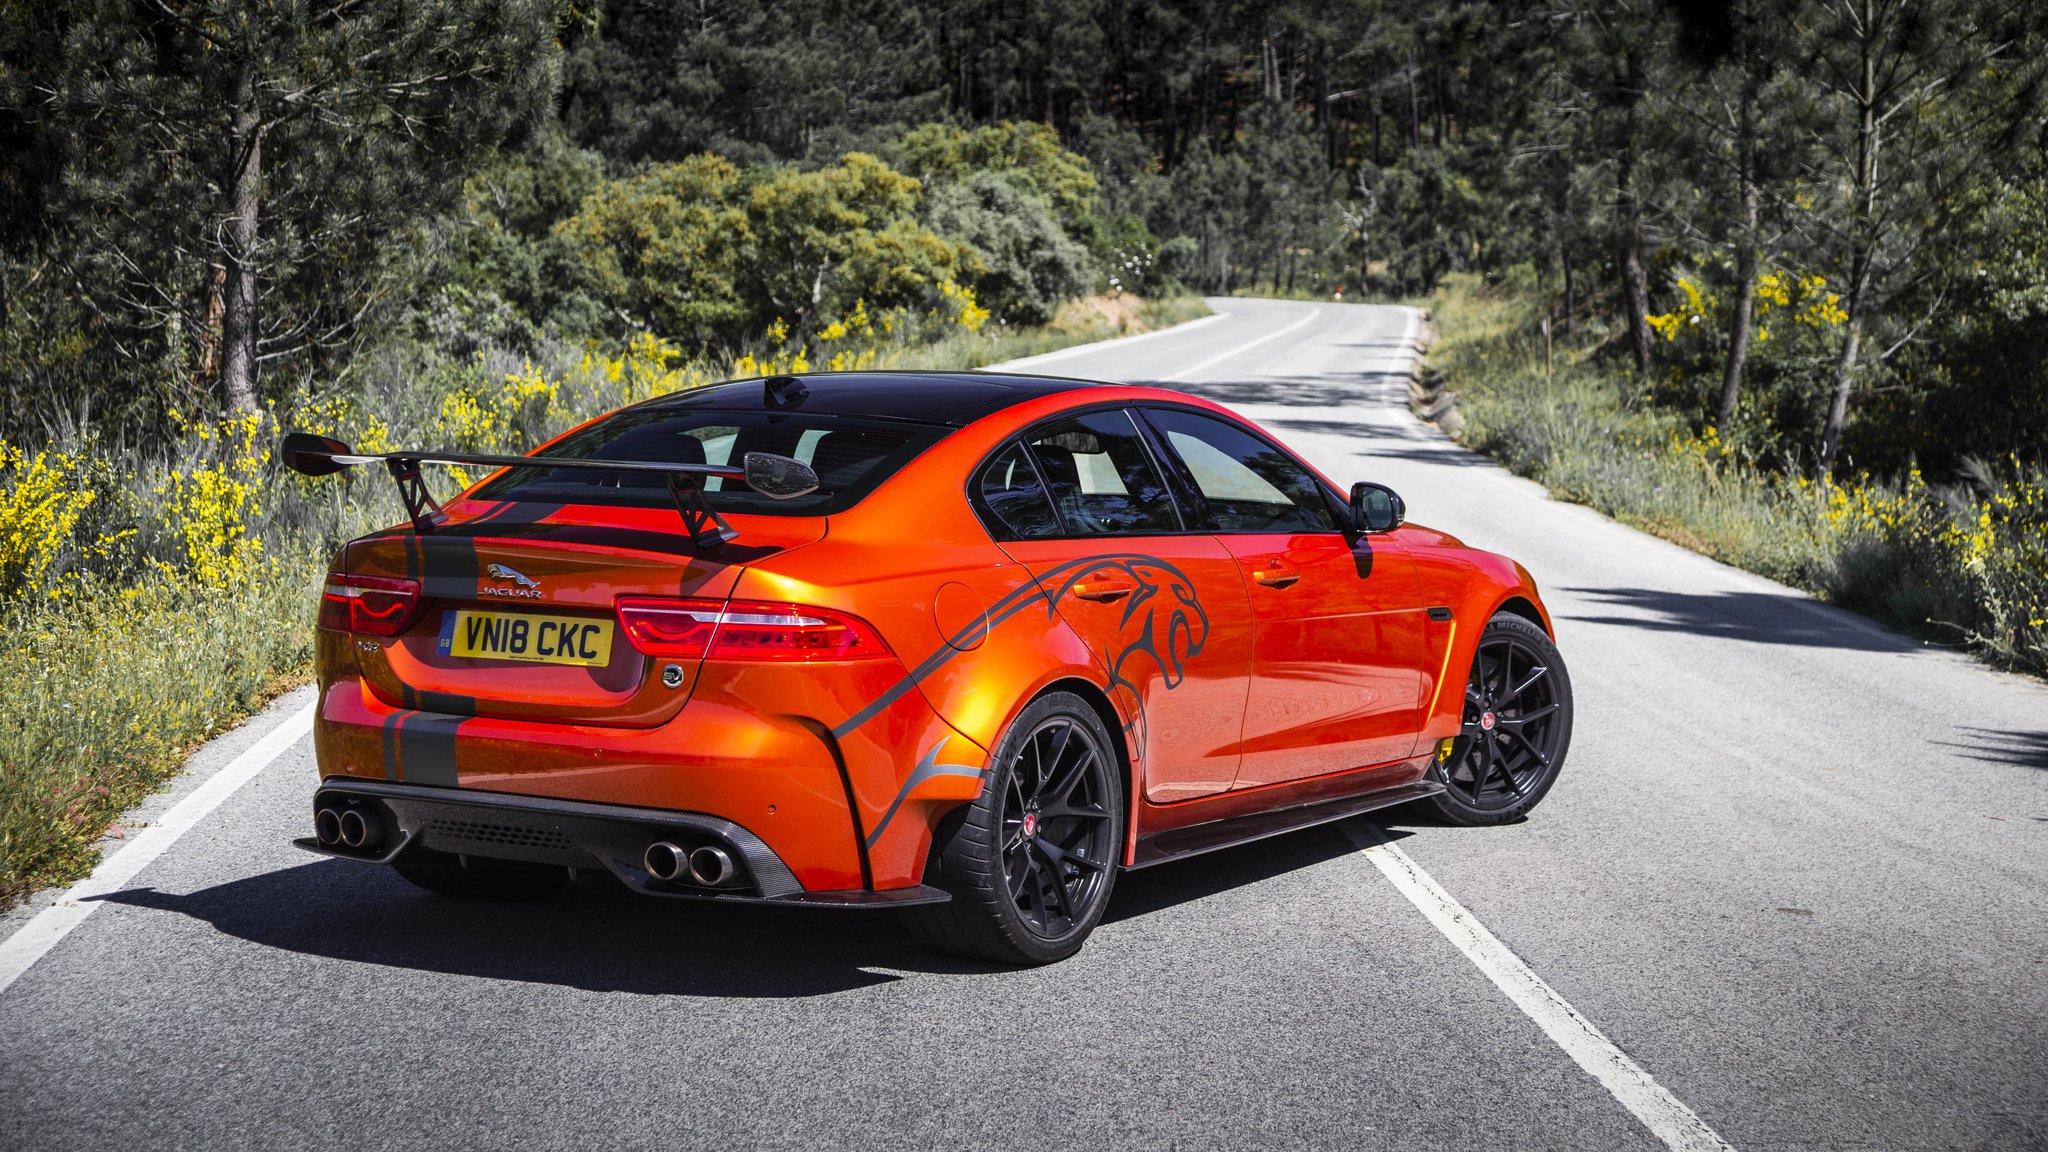 Jaguar look of 600PS. Discover #Jaguar #XE #SV #Project our most extreme performance Jaguar ever